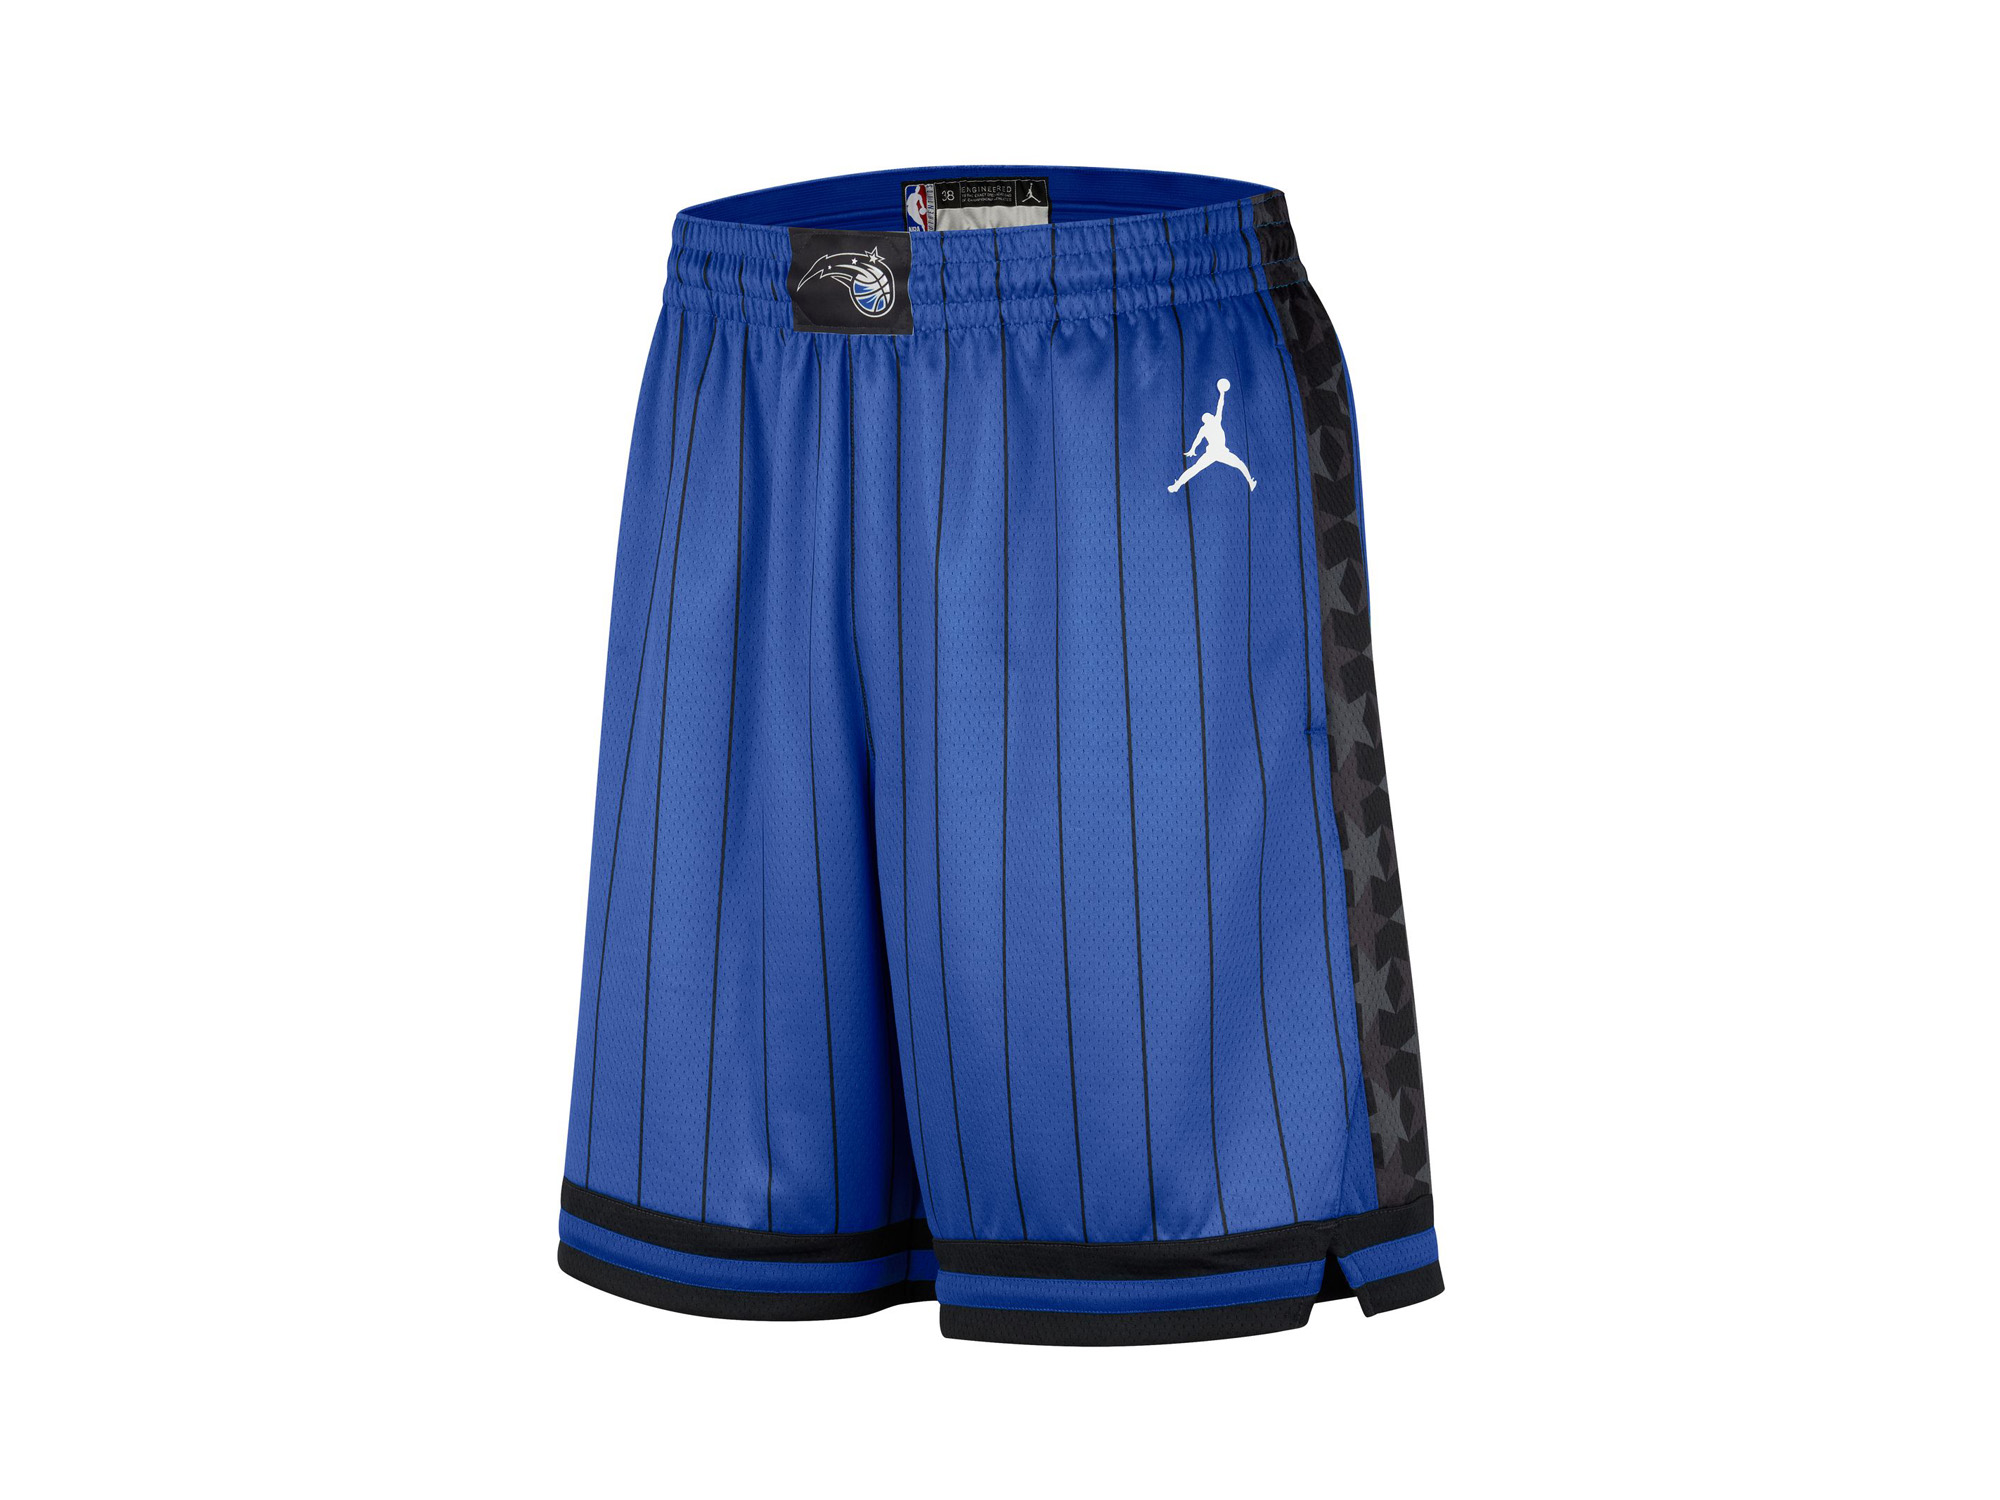 Jordan NBA Orlando Magic Statement Edition Swingman Shorts